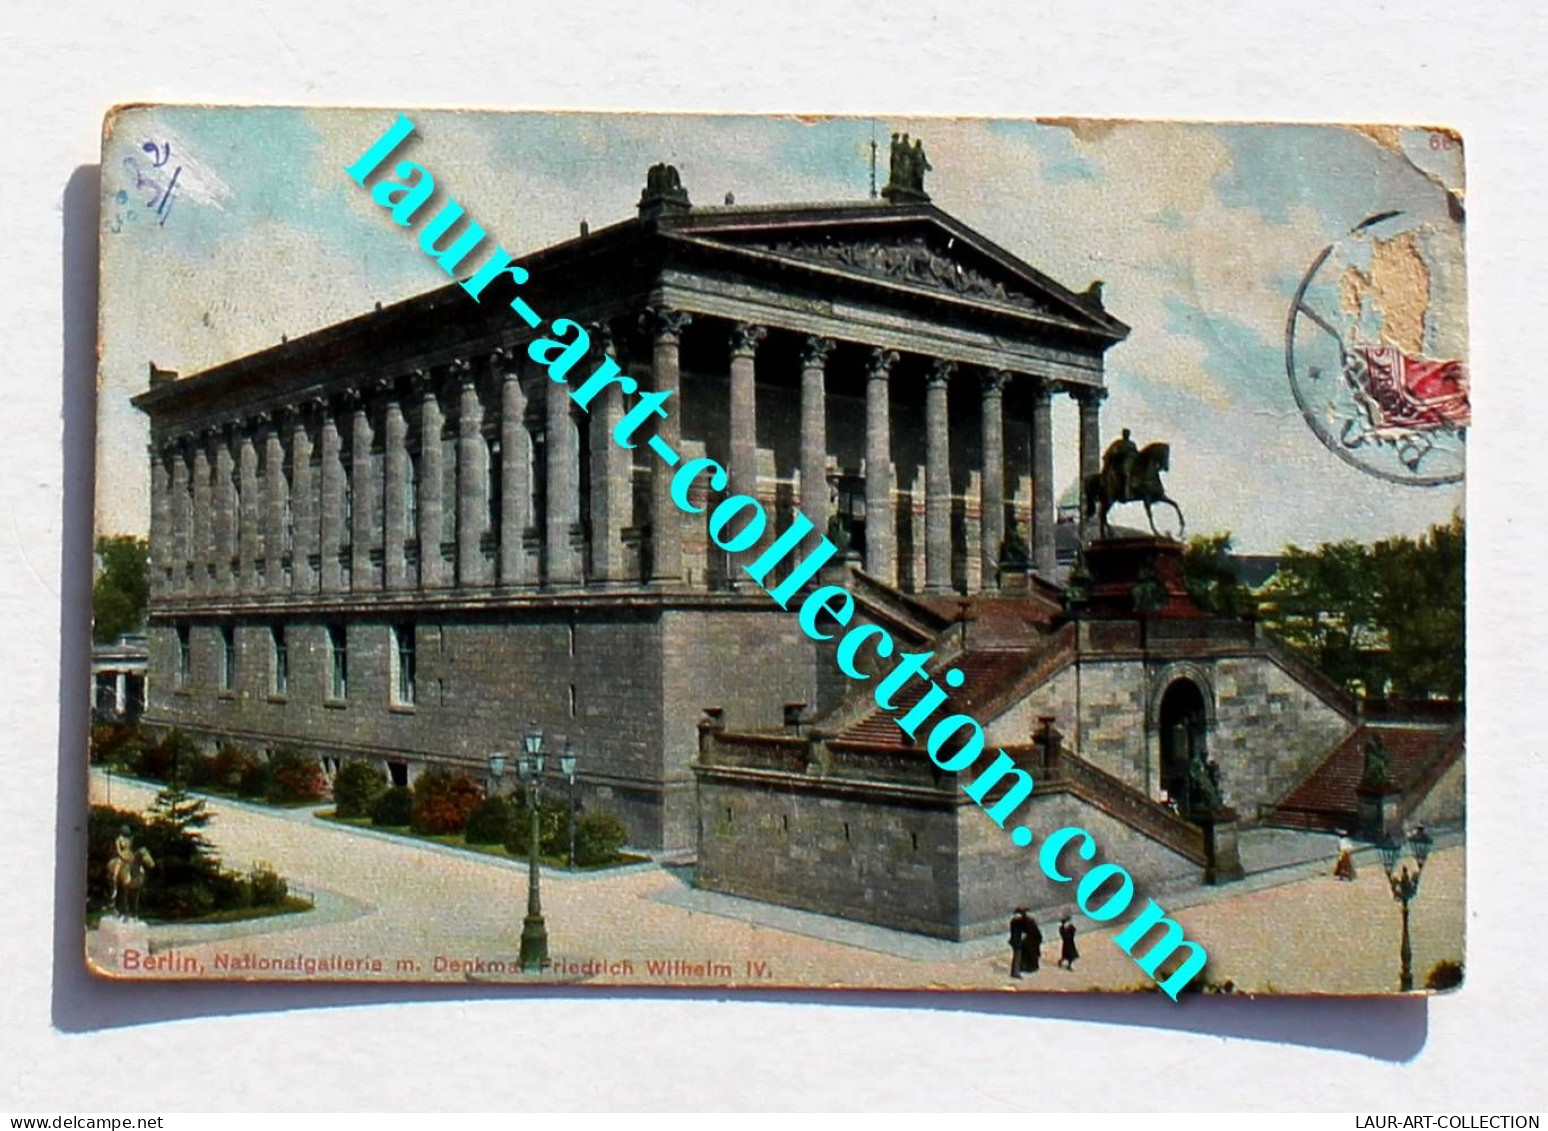 CARTE POSTALE ALLEMAGNE BERLIN MONUMENT GALERIE NATIONALE FRIEDRICH WILHEIM 1907, CARTE POSTALE ANCIENNE POSTCARD (2120) - Friedrichshain